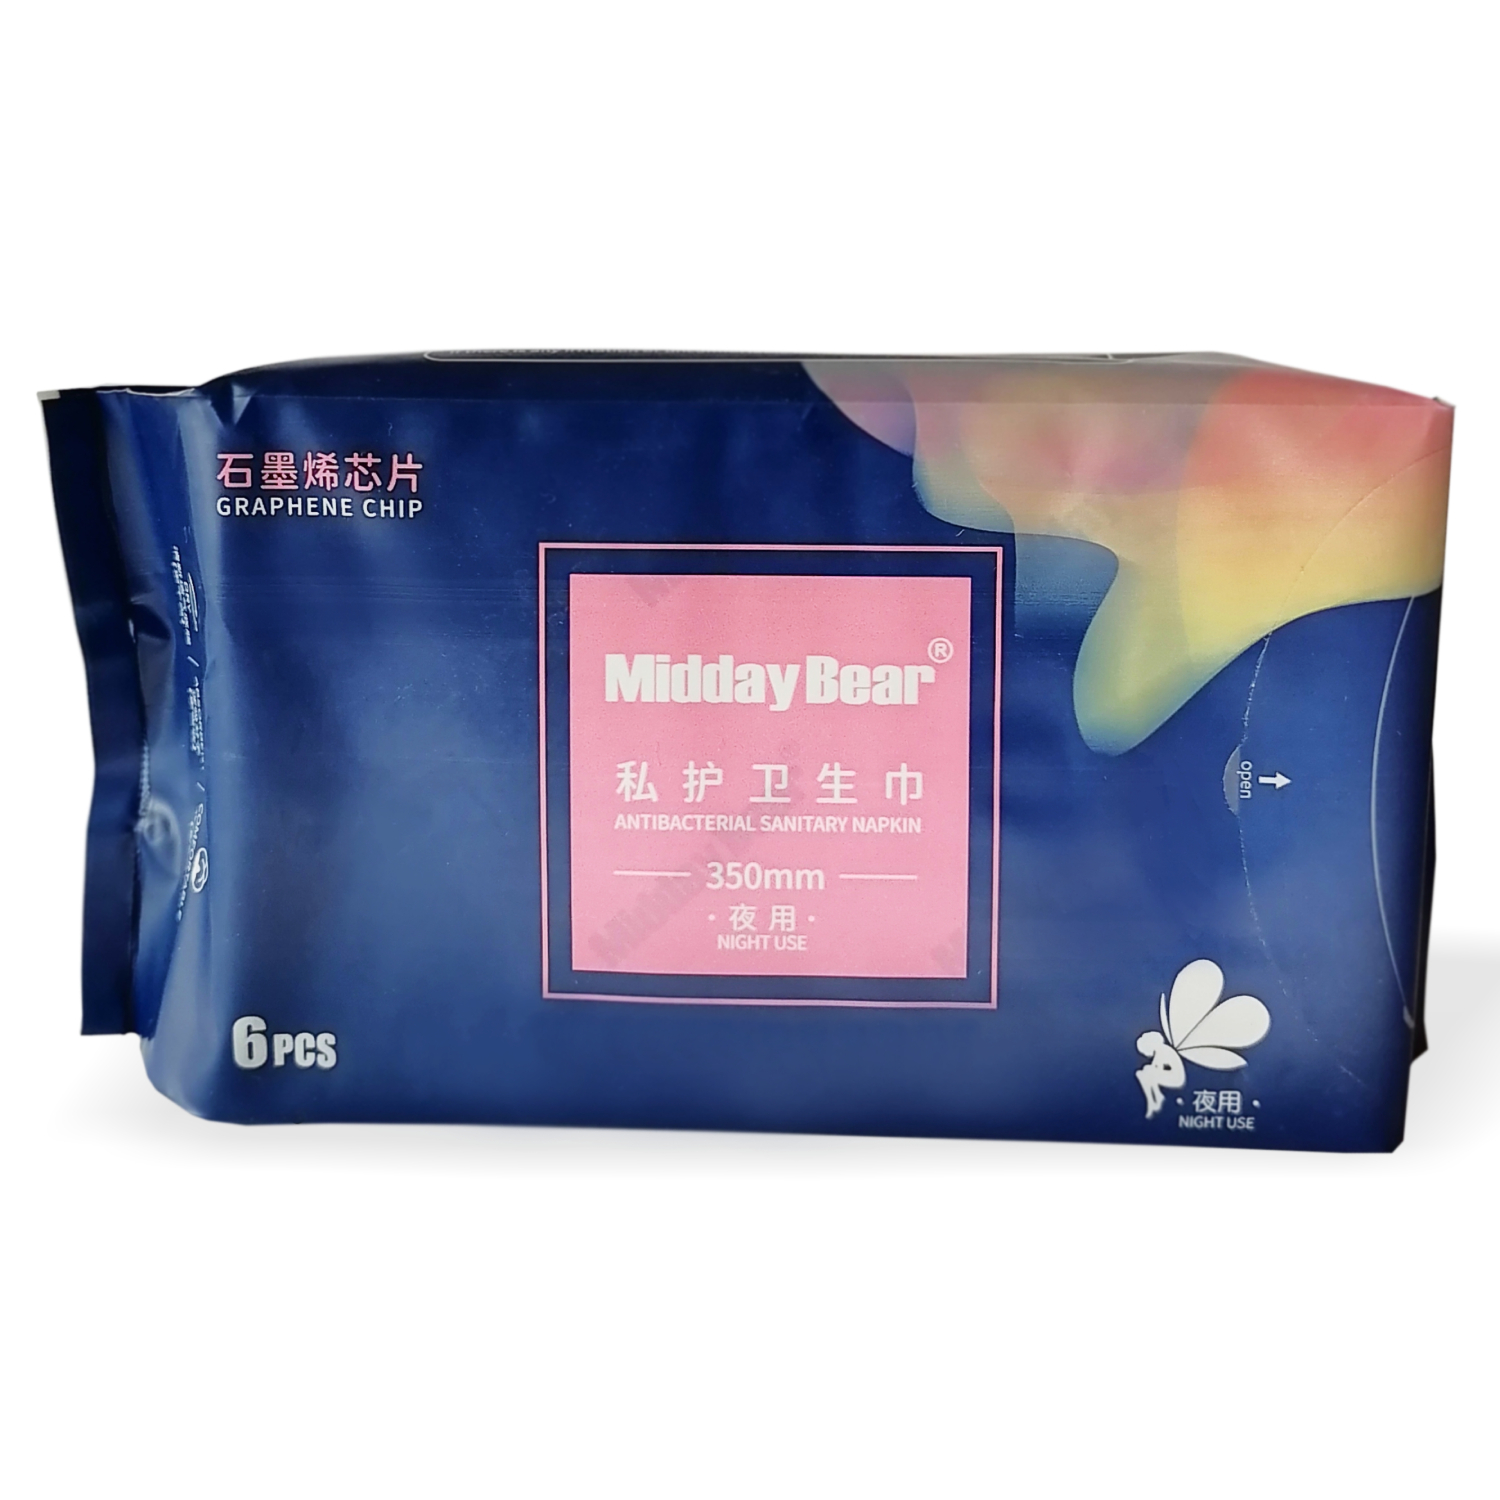 Прокладки Midday Bear гигиенические ночные 350 мм 6 шт айда гулять гигиенические биоразлагаемые пакеты для уборки за собакой 20 шт